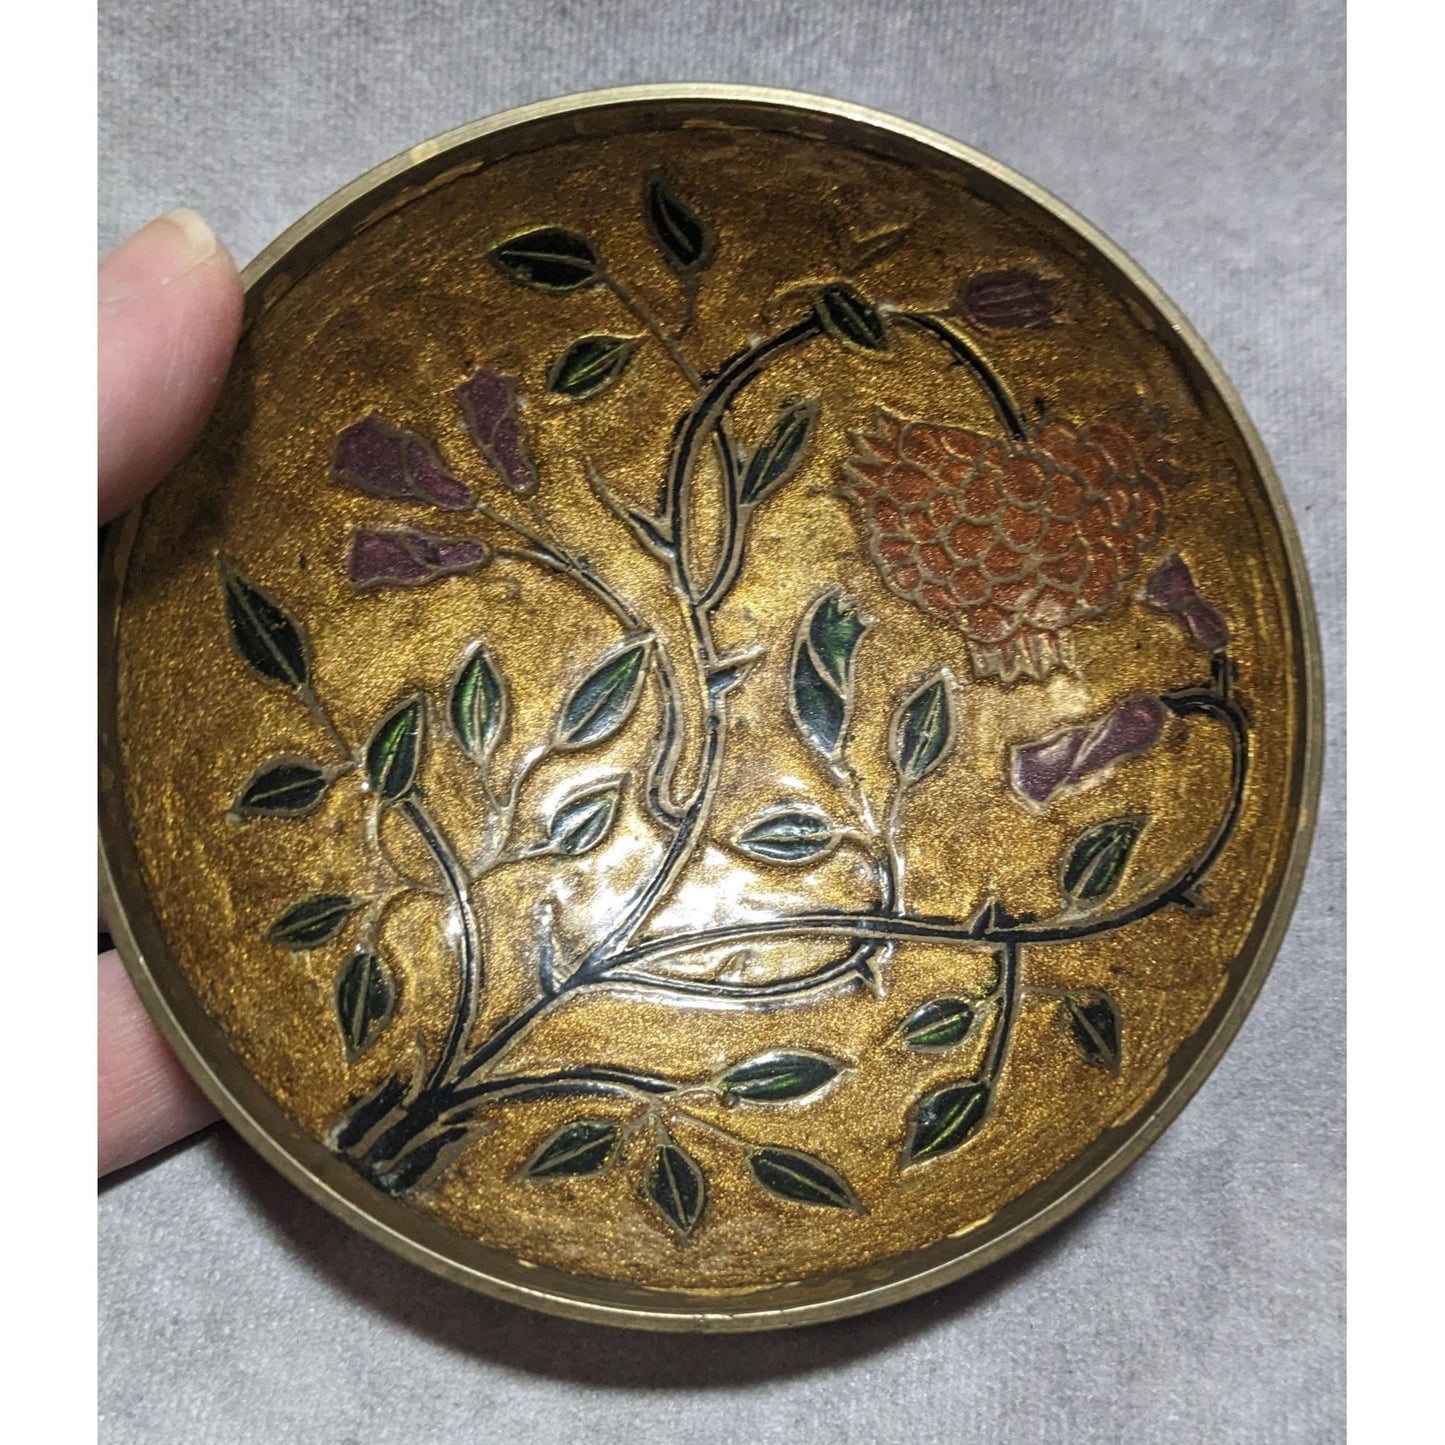 Vintage Brass Floral Bowl